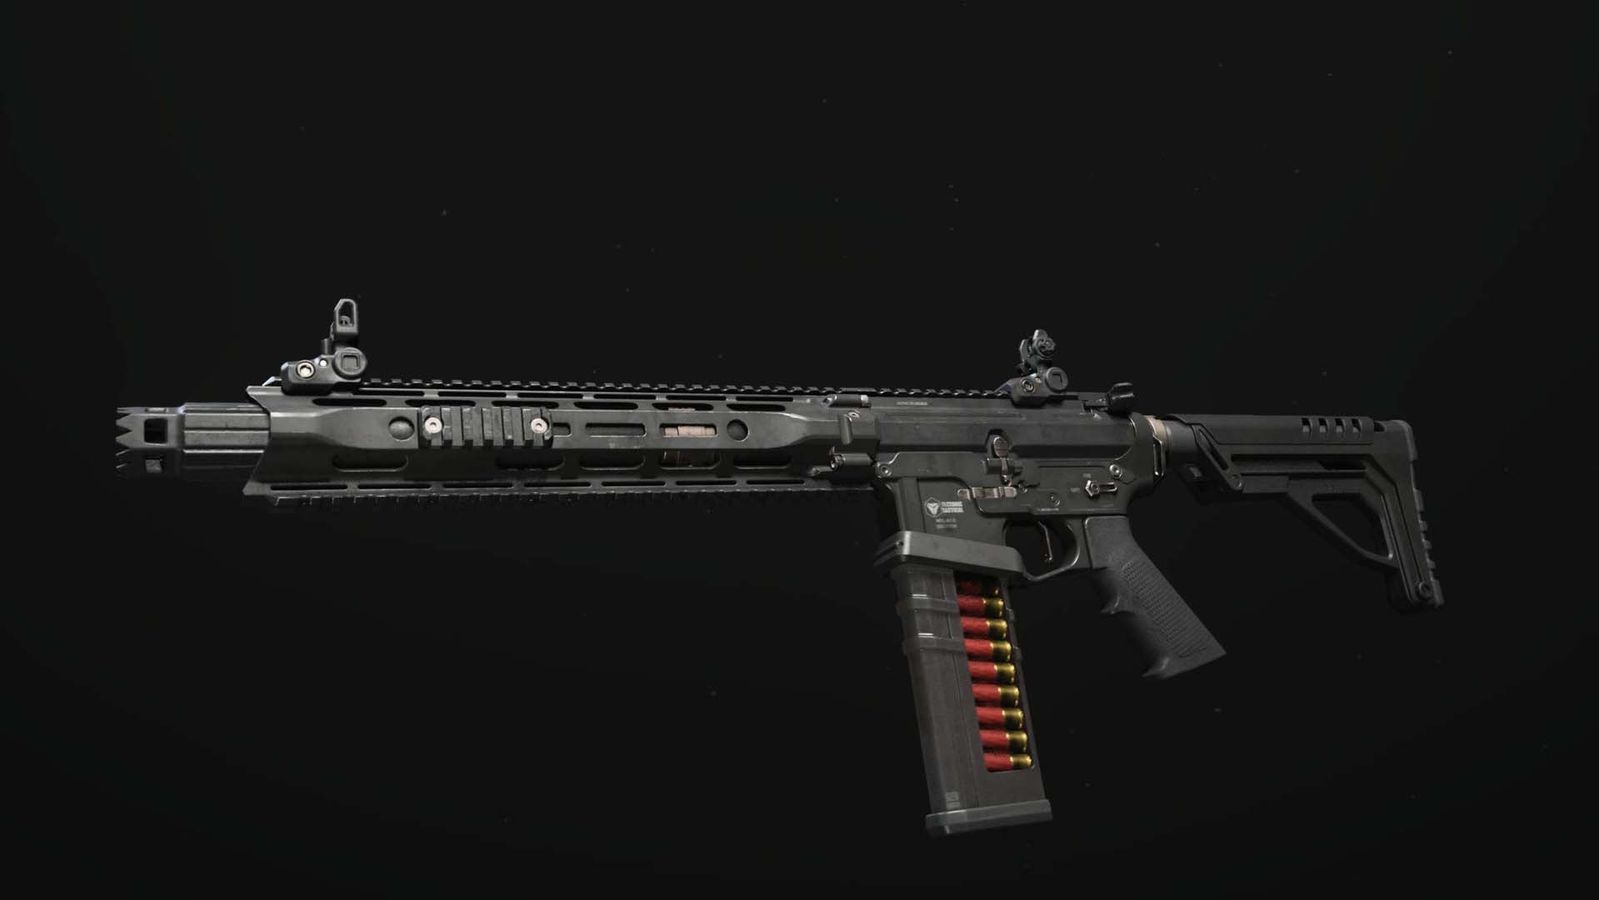 Modern Warfare 3 shotgun on black background